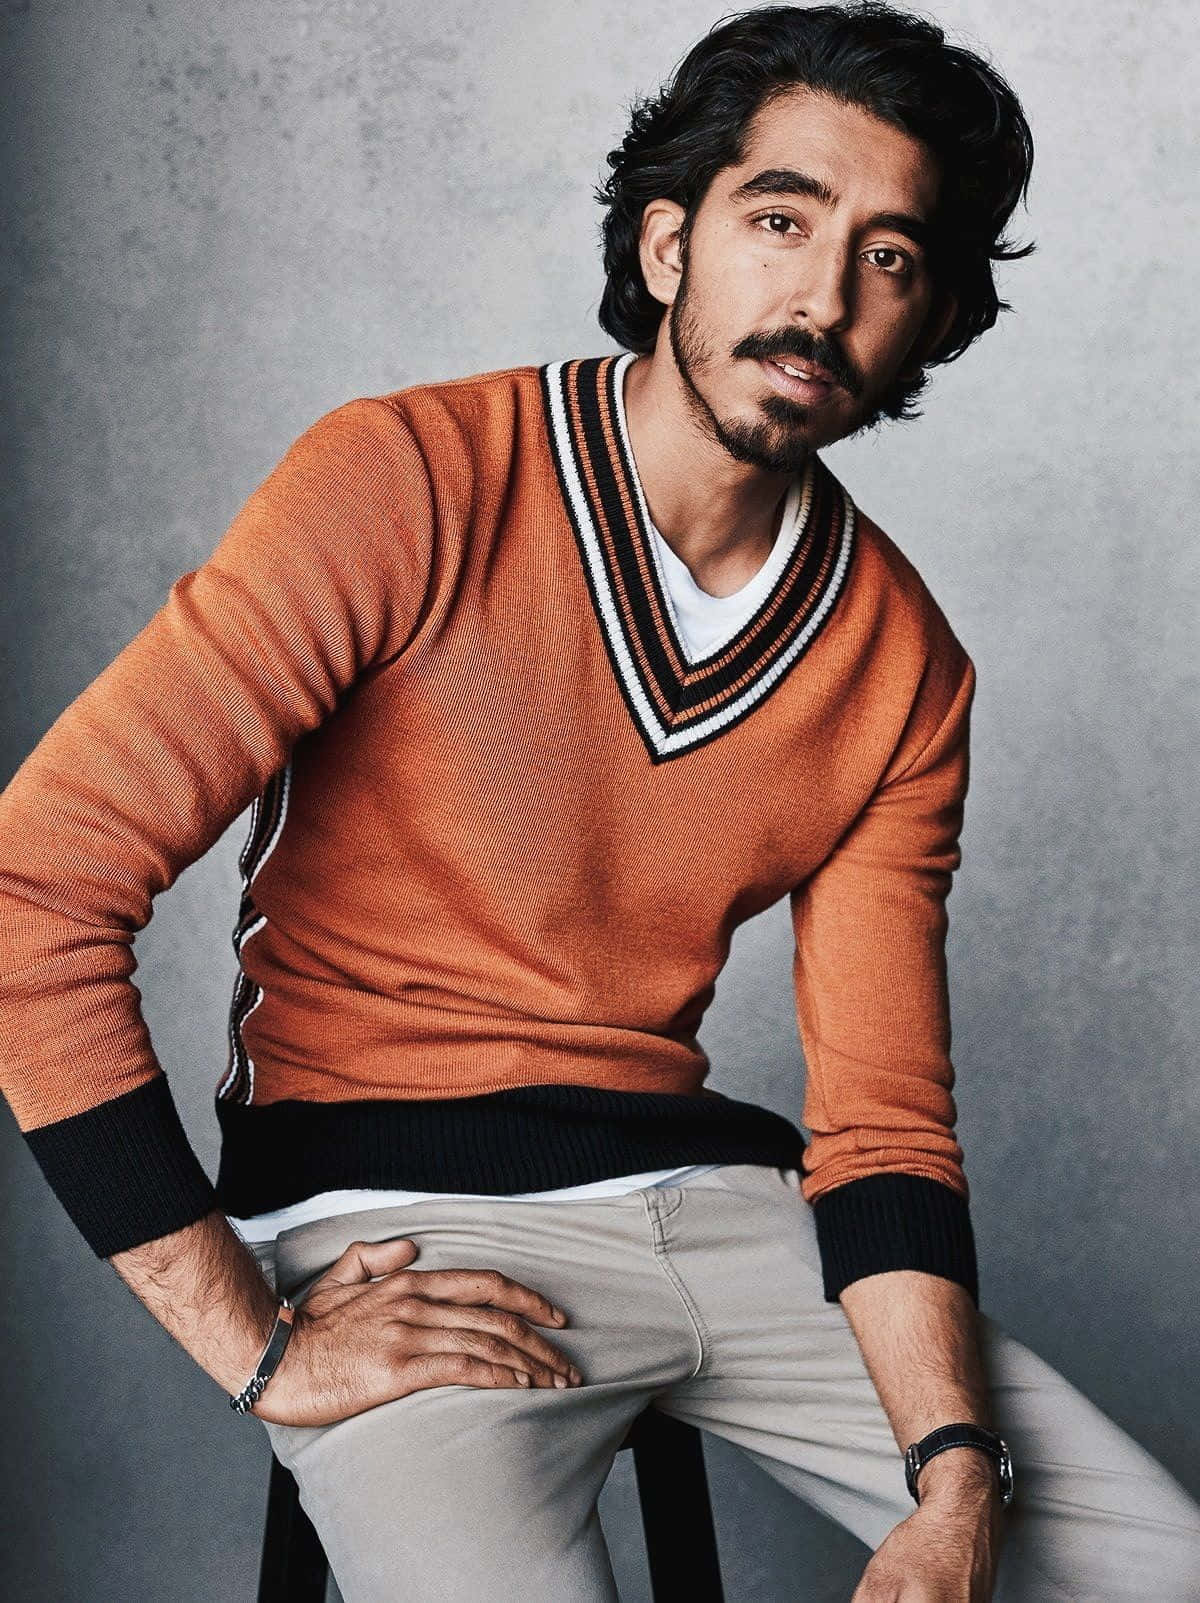 Award-winning Actor Dev Patel In An Expressive Pose Wallpaper